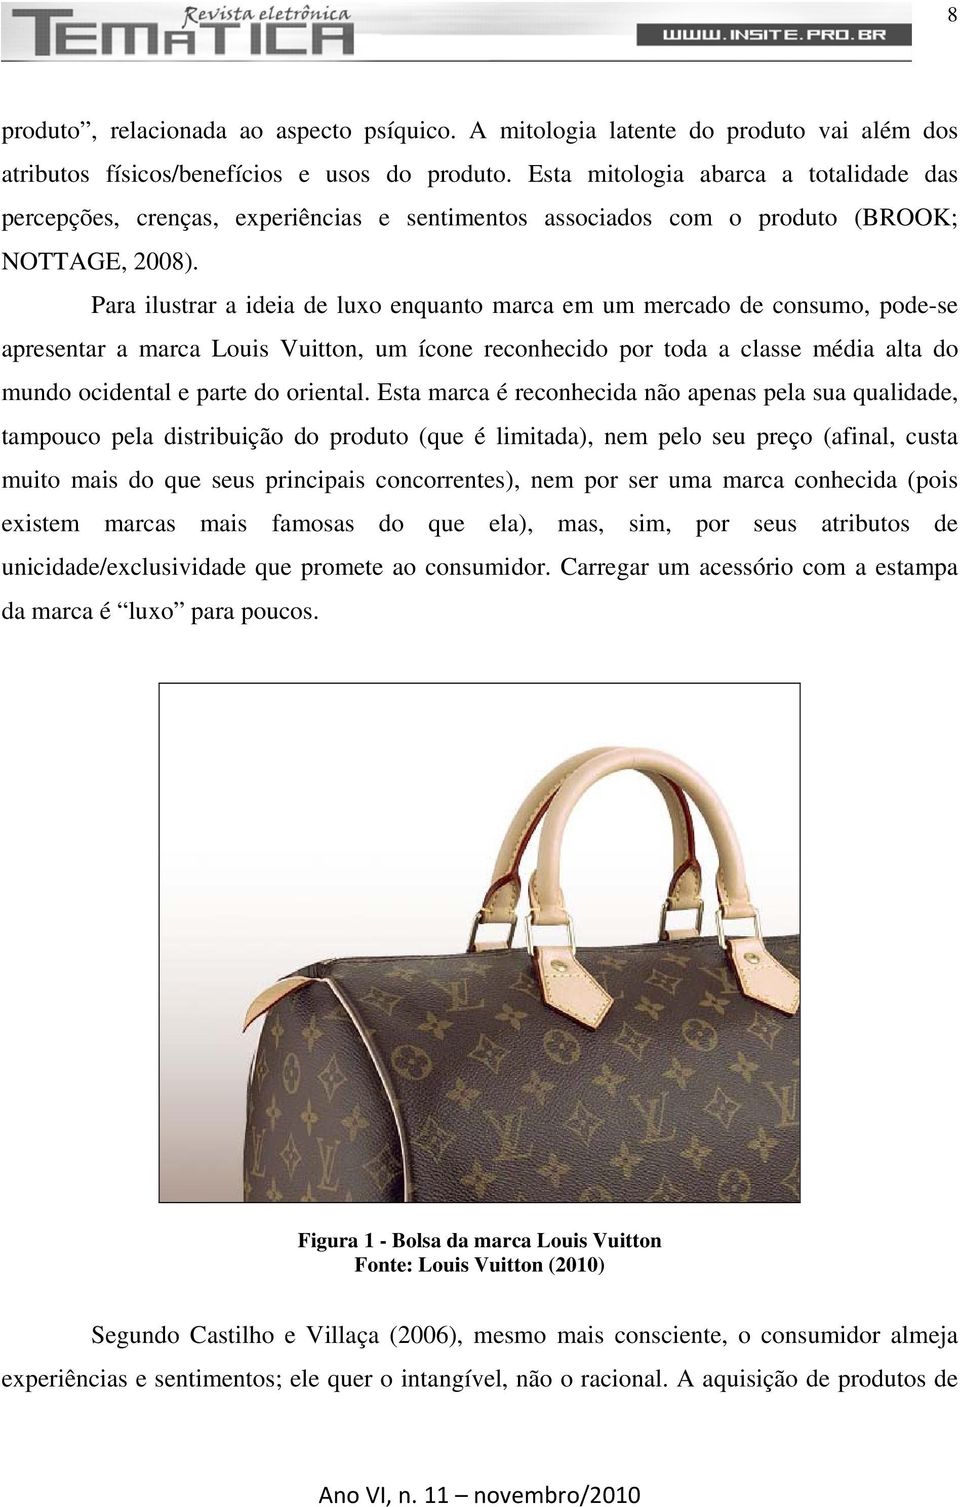 Para ilustrar a ideia de luxo enquanto marca em um mercado de consumo, pode-se apresentar a marca Louis Vuitton, um ícone reconhecido por toda a classe média alta do mundo ocidental e parte do